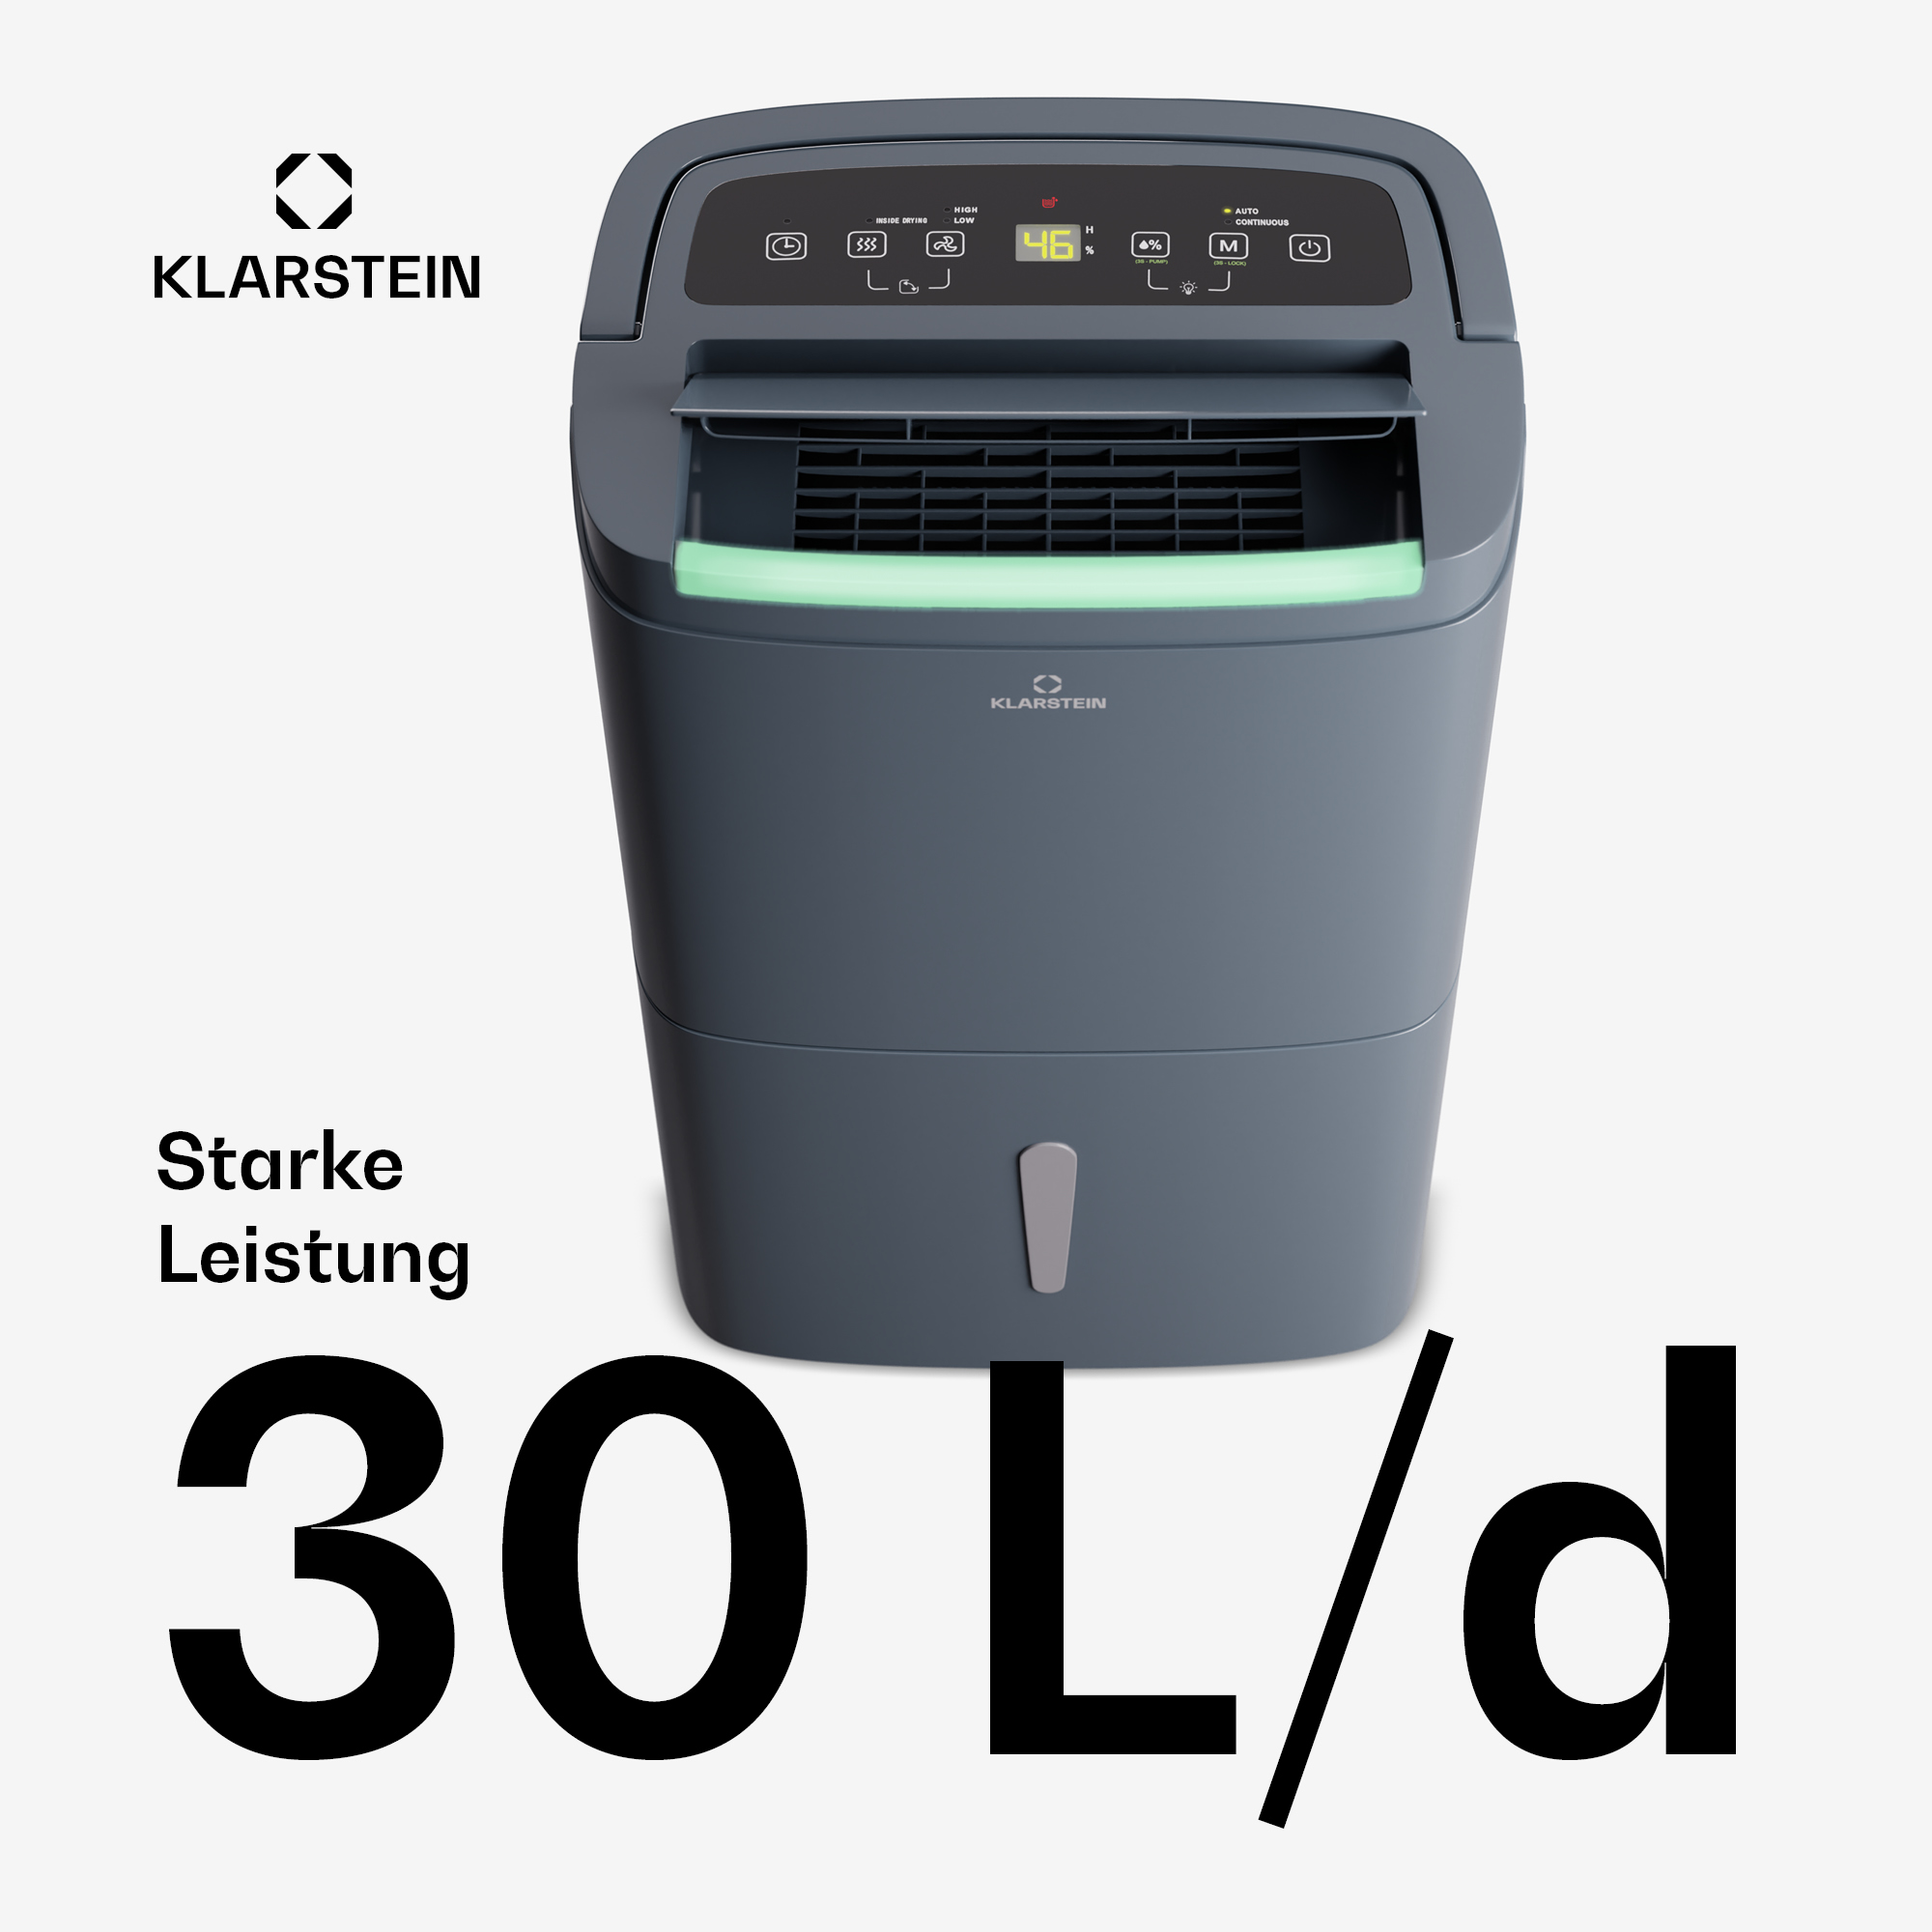 KLARSTEIN Raumgröße: 30 30 (600 Watt, Connect Luftentfeuchter Anthrazit DryFy m²)